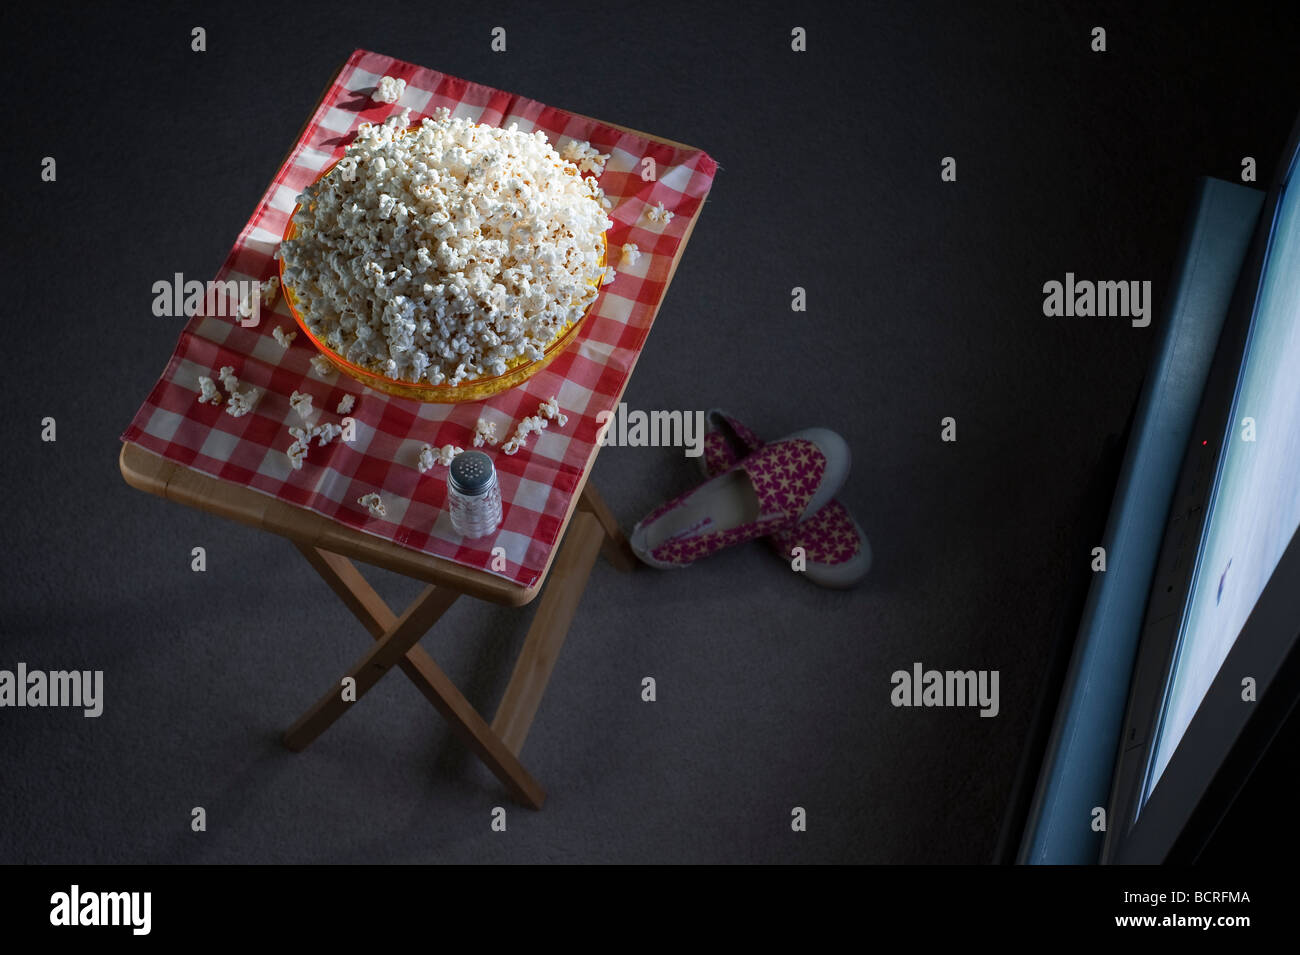 Wohnzimmer eines Hauses mit Popcorn auf einem tv-Tablett vor Fernseher nachts mit Schüssel popcorn Stockfoto